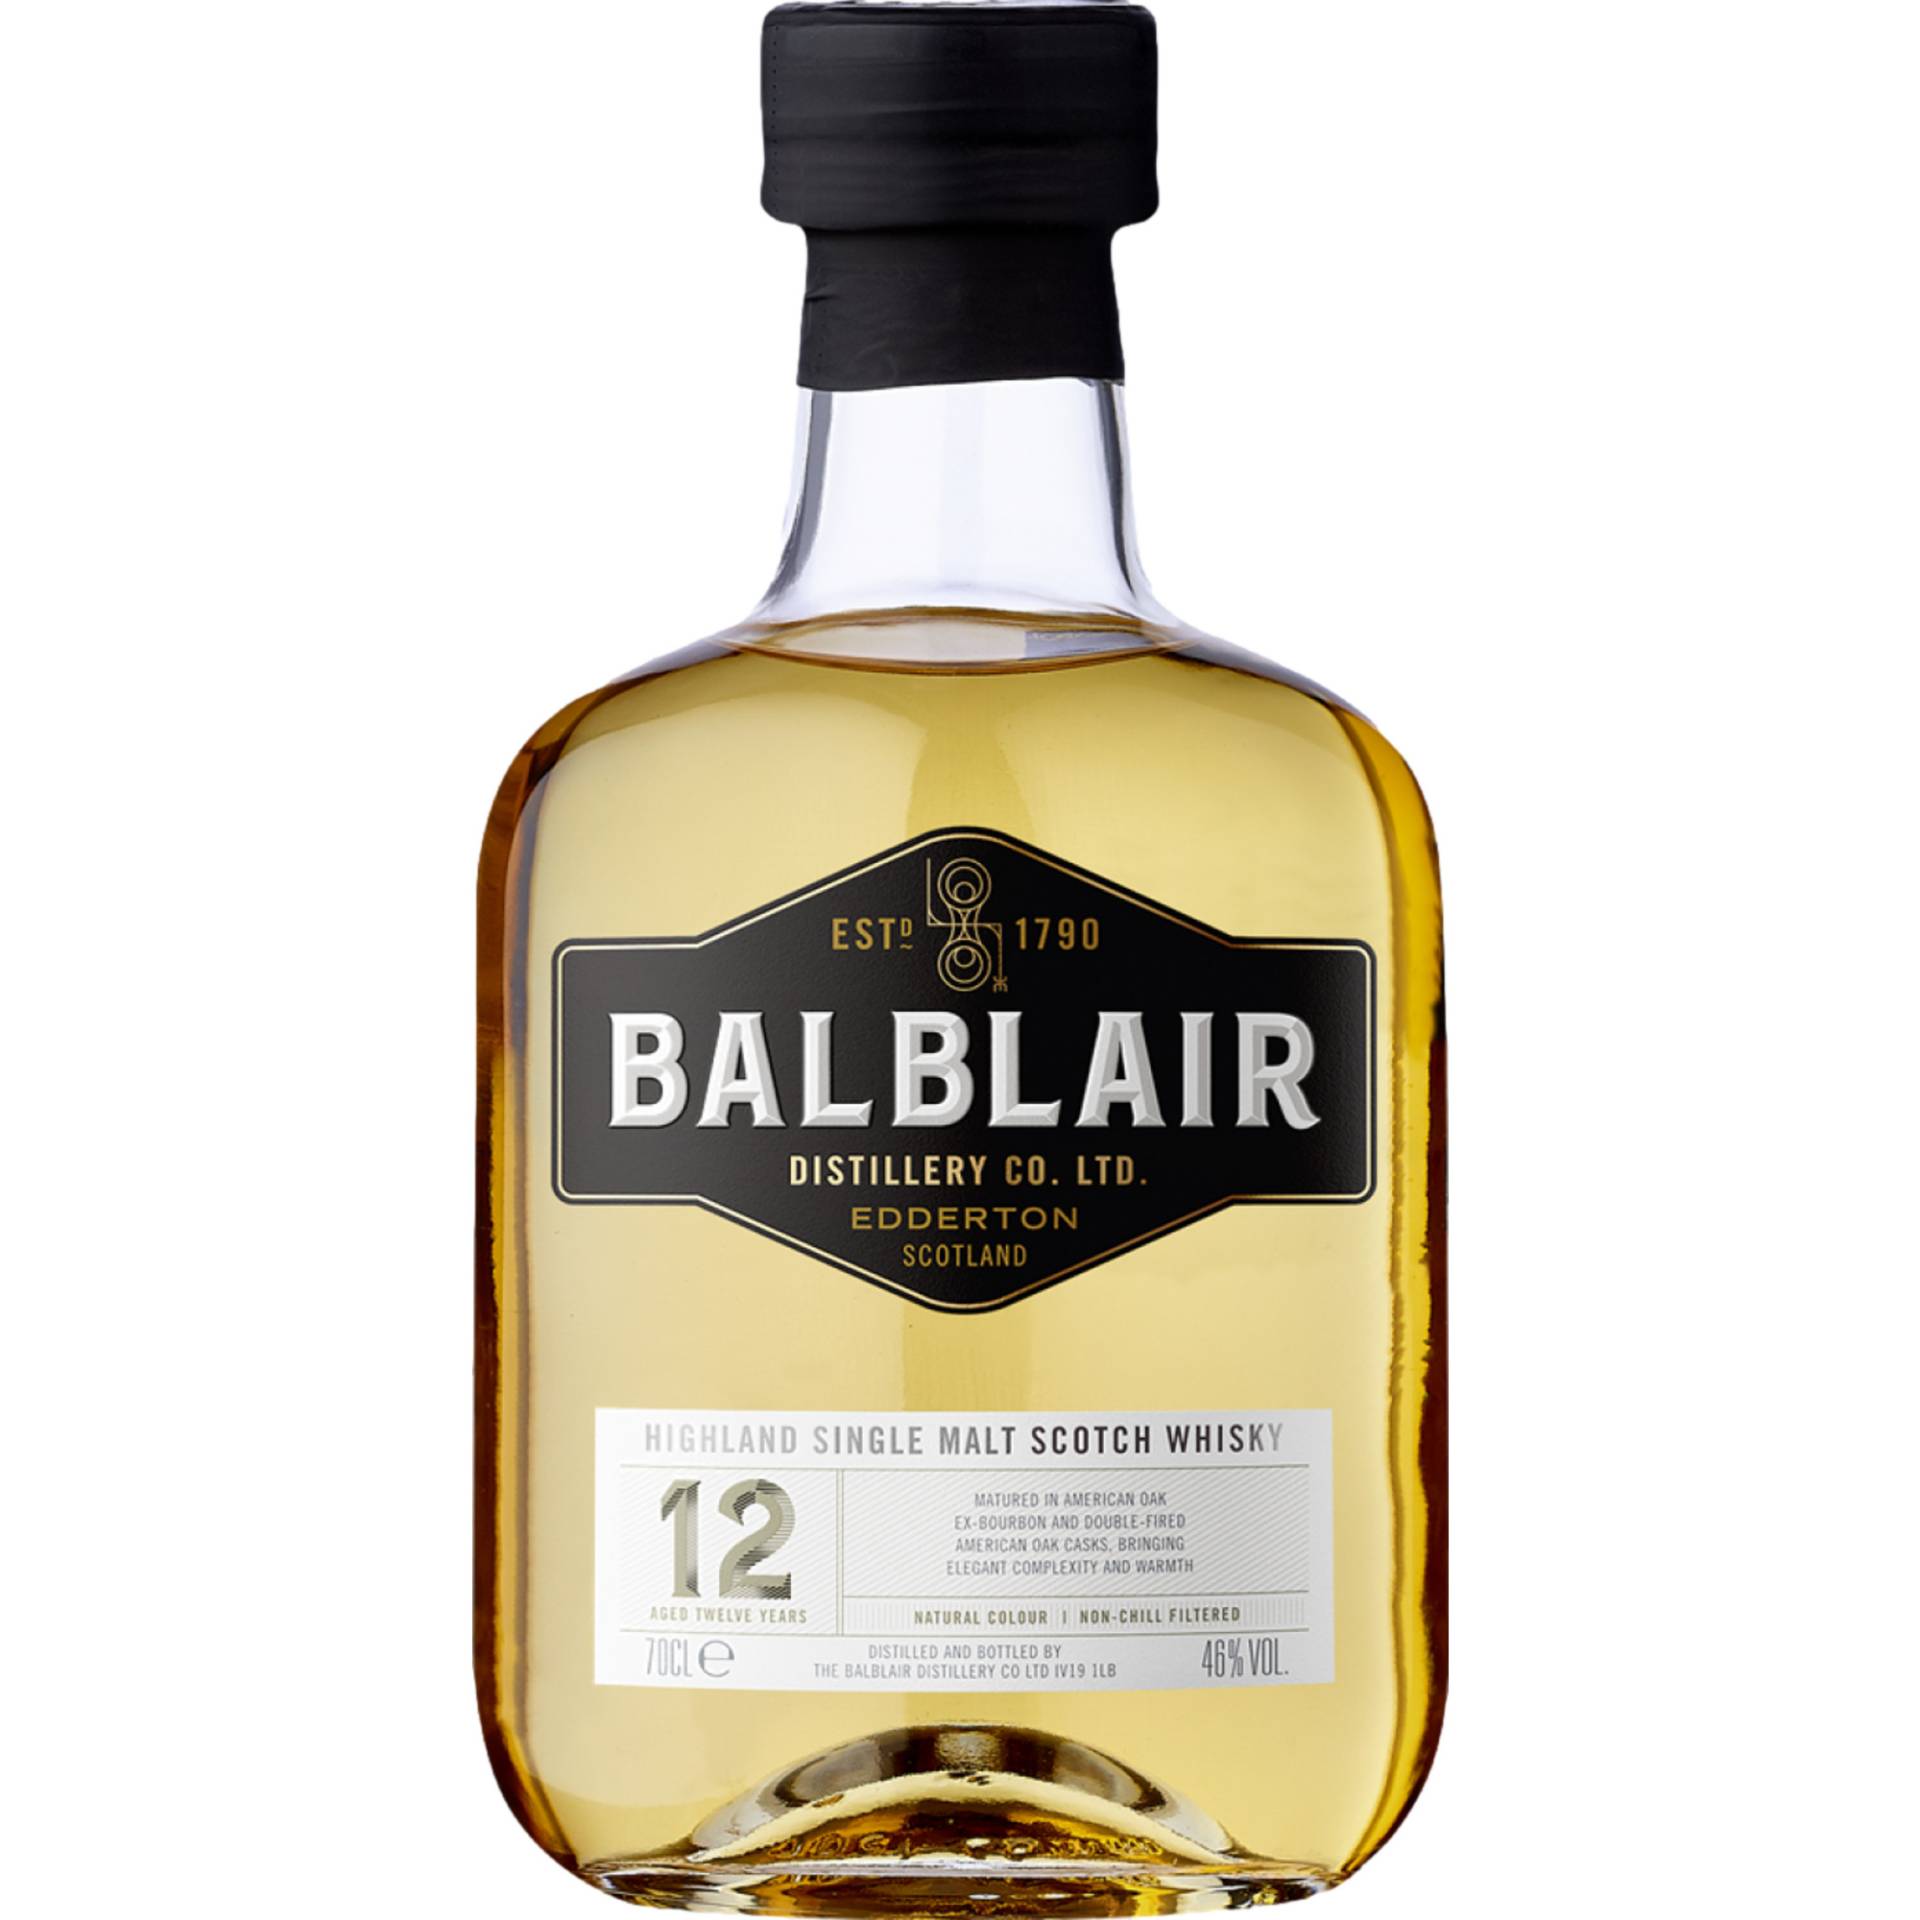 Balblair 12 Years Old Single Malt, Scotch Whisky, 0,7 L, 46% Vol., in Geschenketui, Schottland, Spirituosen von Balblair Distillery, Edderton, Tain, Ross-Shire IV19 1LB Großbritannien